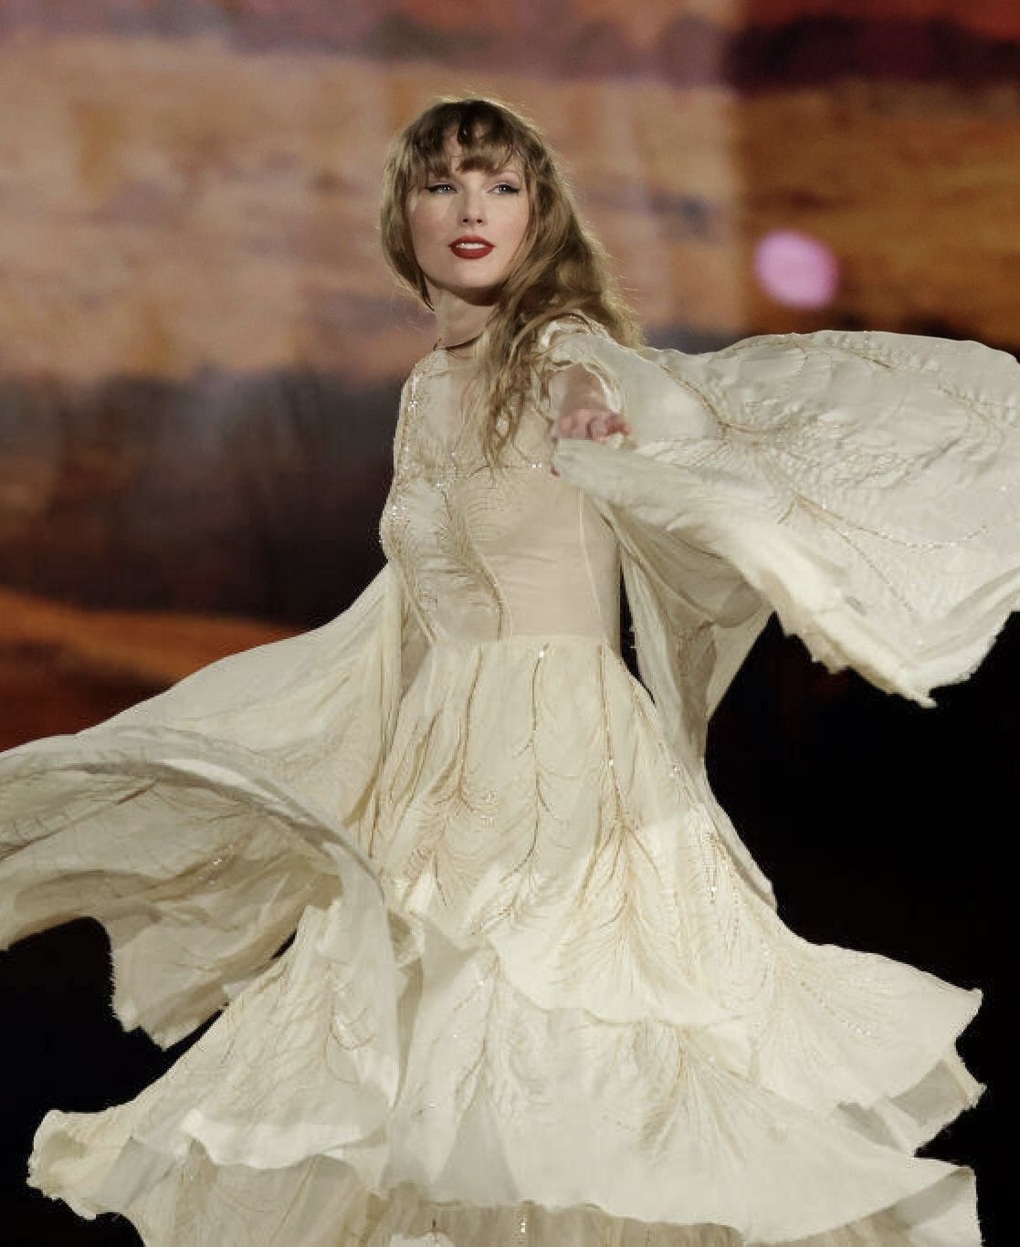 Biểu diễn ở Singapore, Taylor Swift chọn diện đồ của các nhà mốt danh tiếng - 6